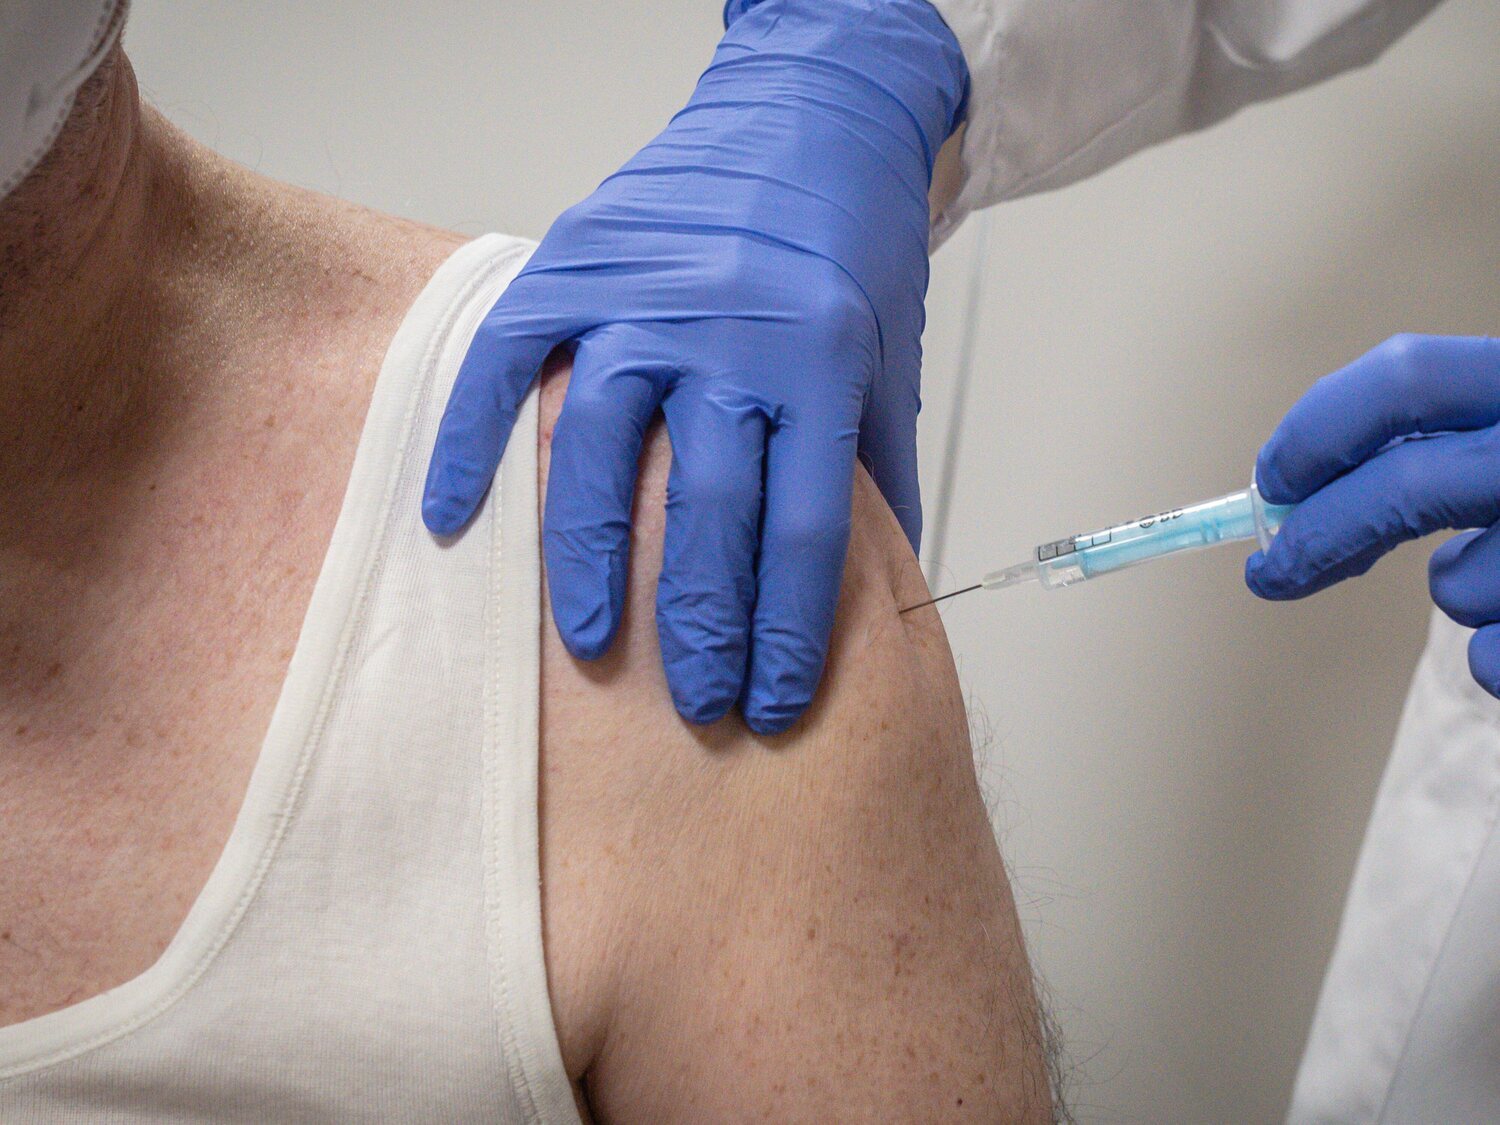 La ciencia estudia al hombre que se vacunó 217 veces contra la Covid